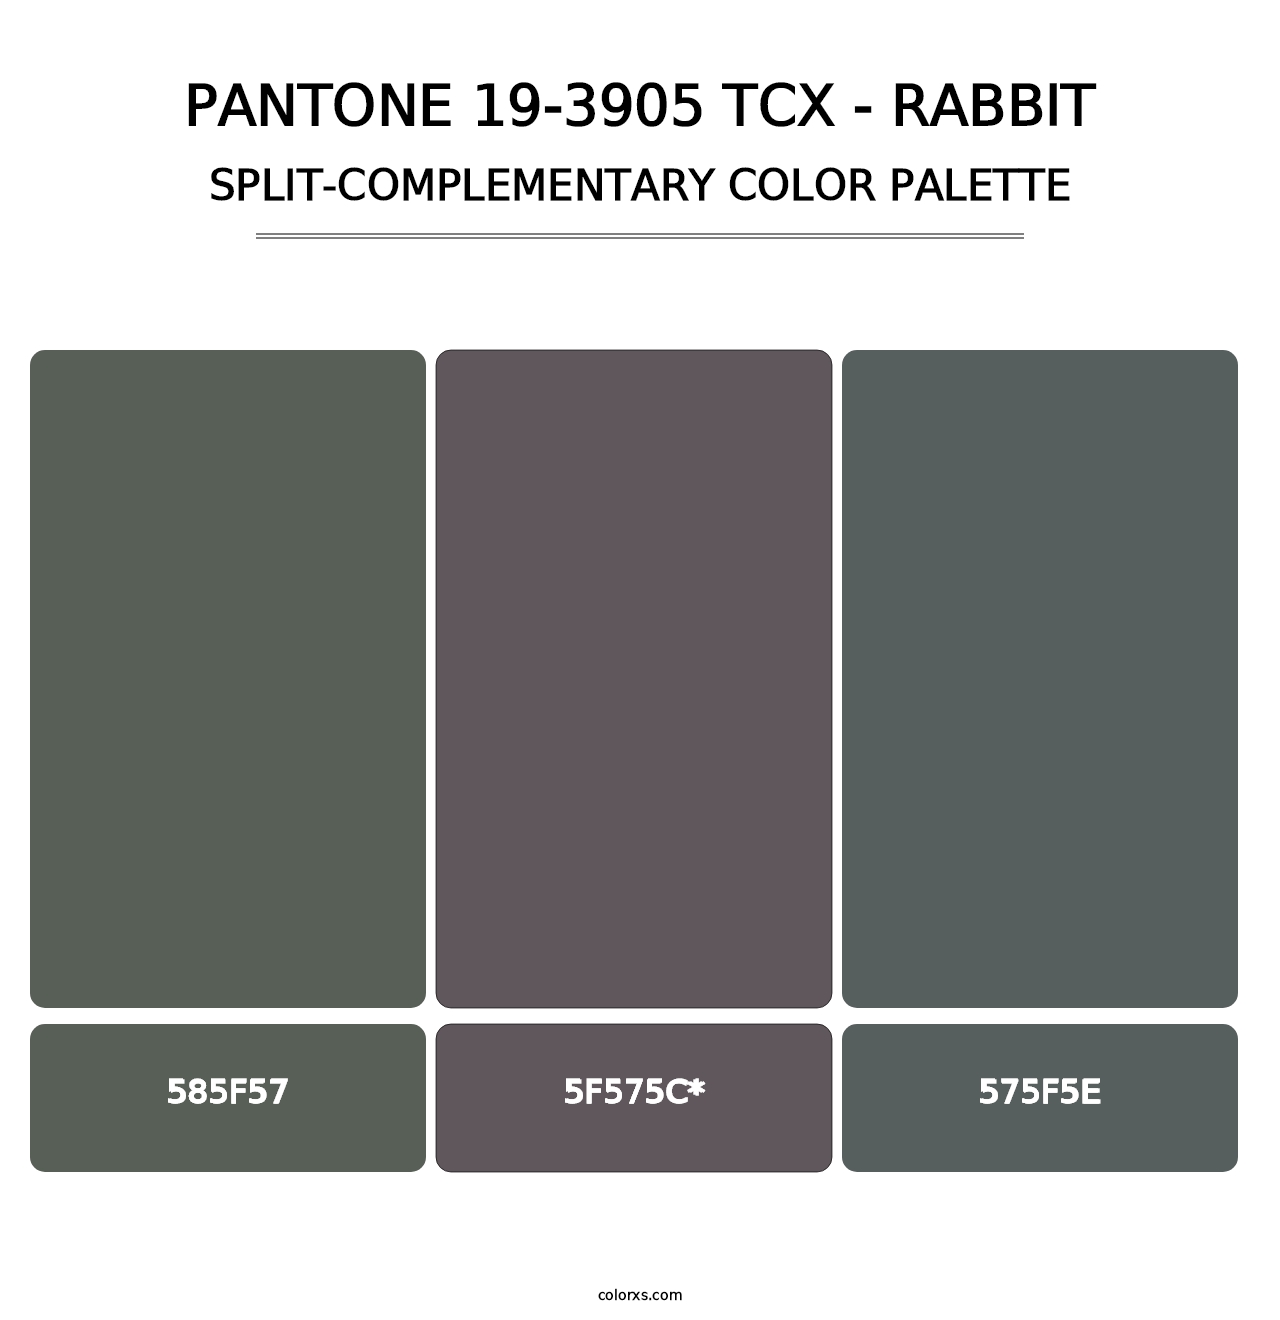 PANTONE 19-3905 TCX - Rabbit - Split-Complementary Color Palette